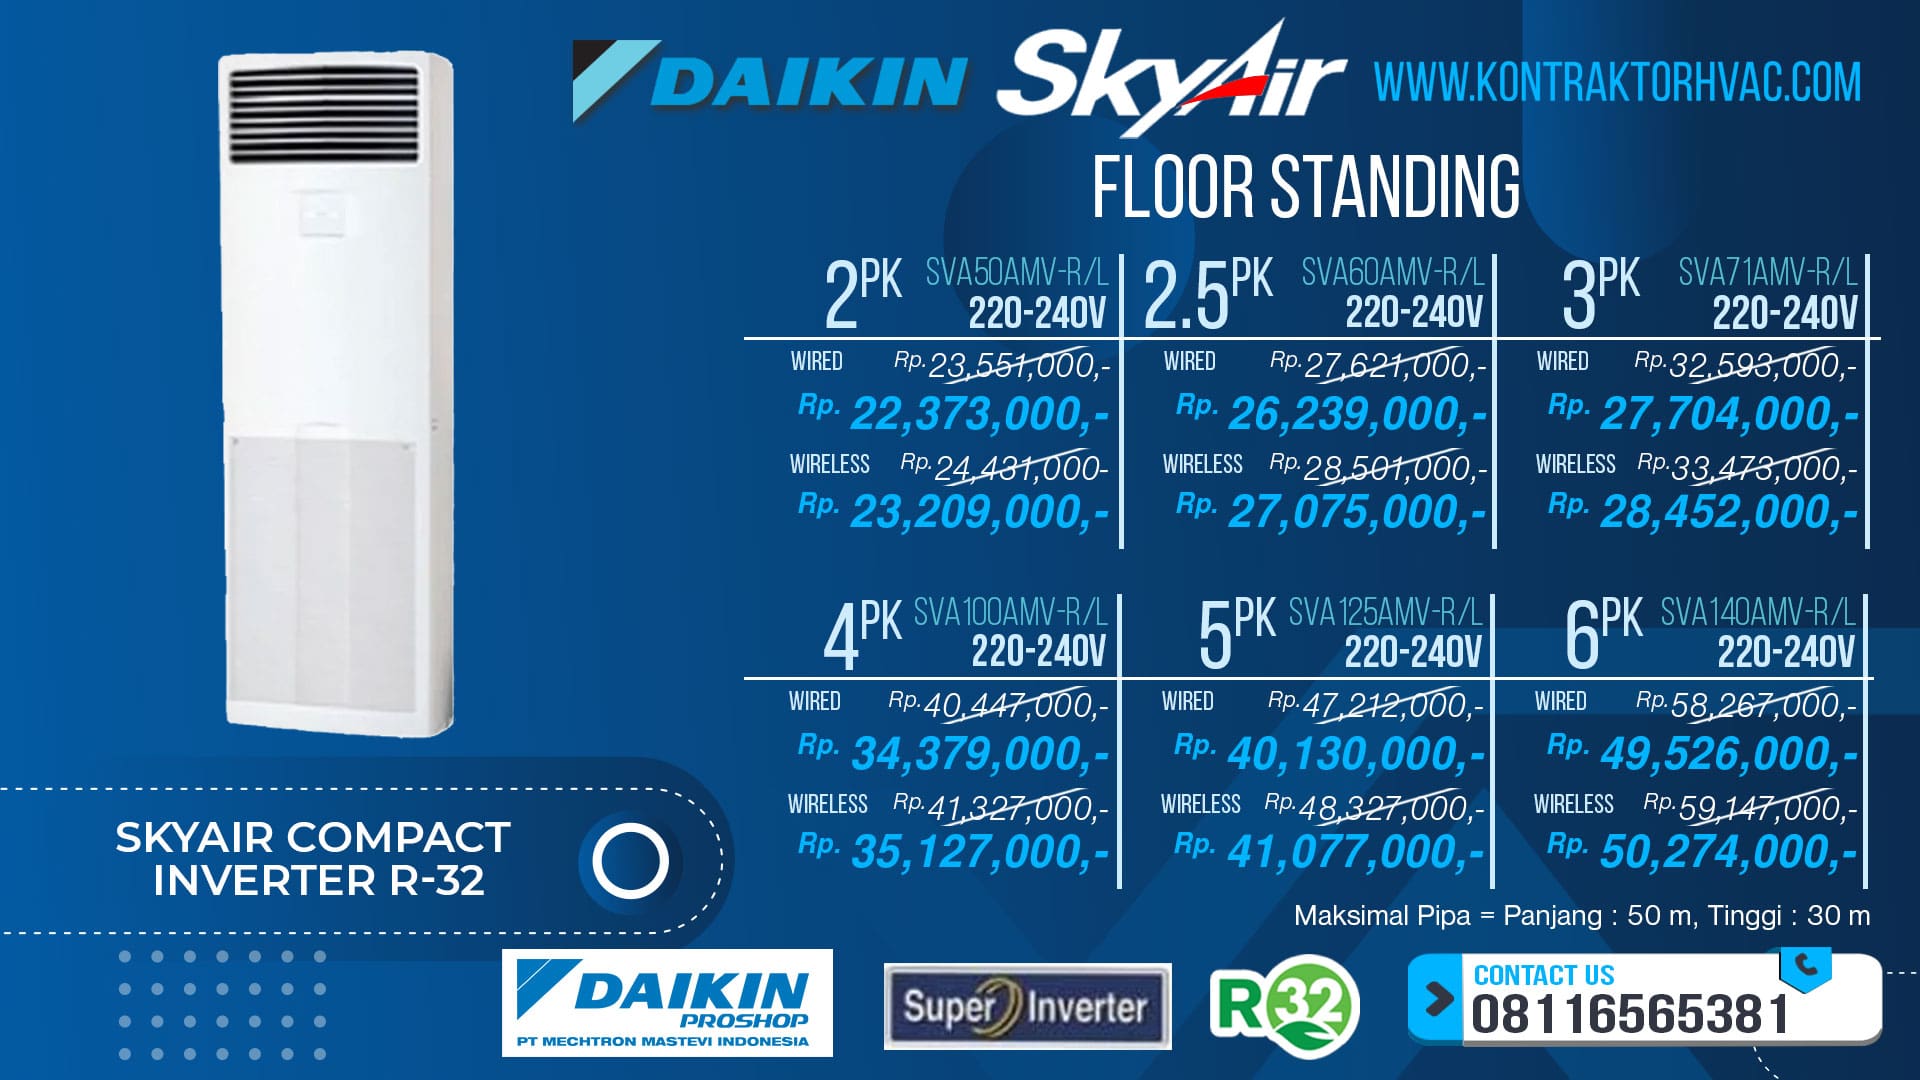 1.Skyair-Compact-Inverter-R-32-Floor-Standing-V-min